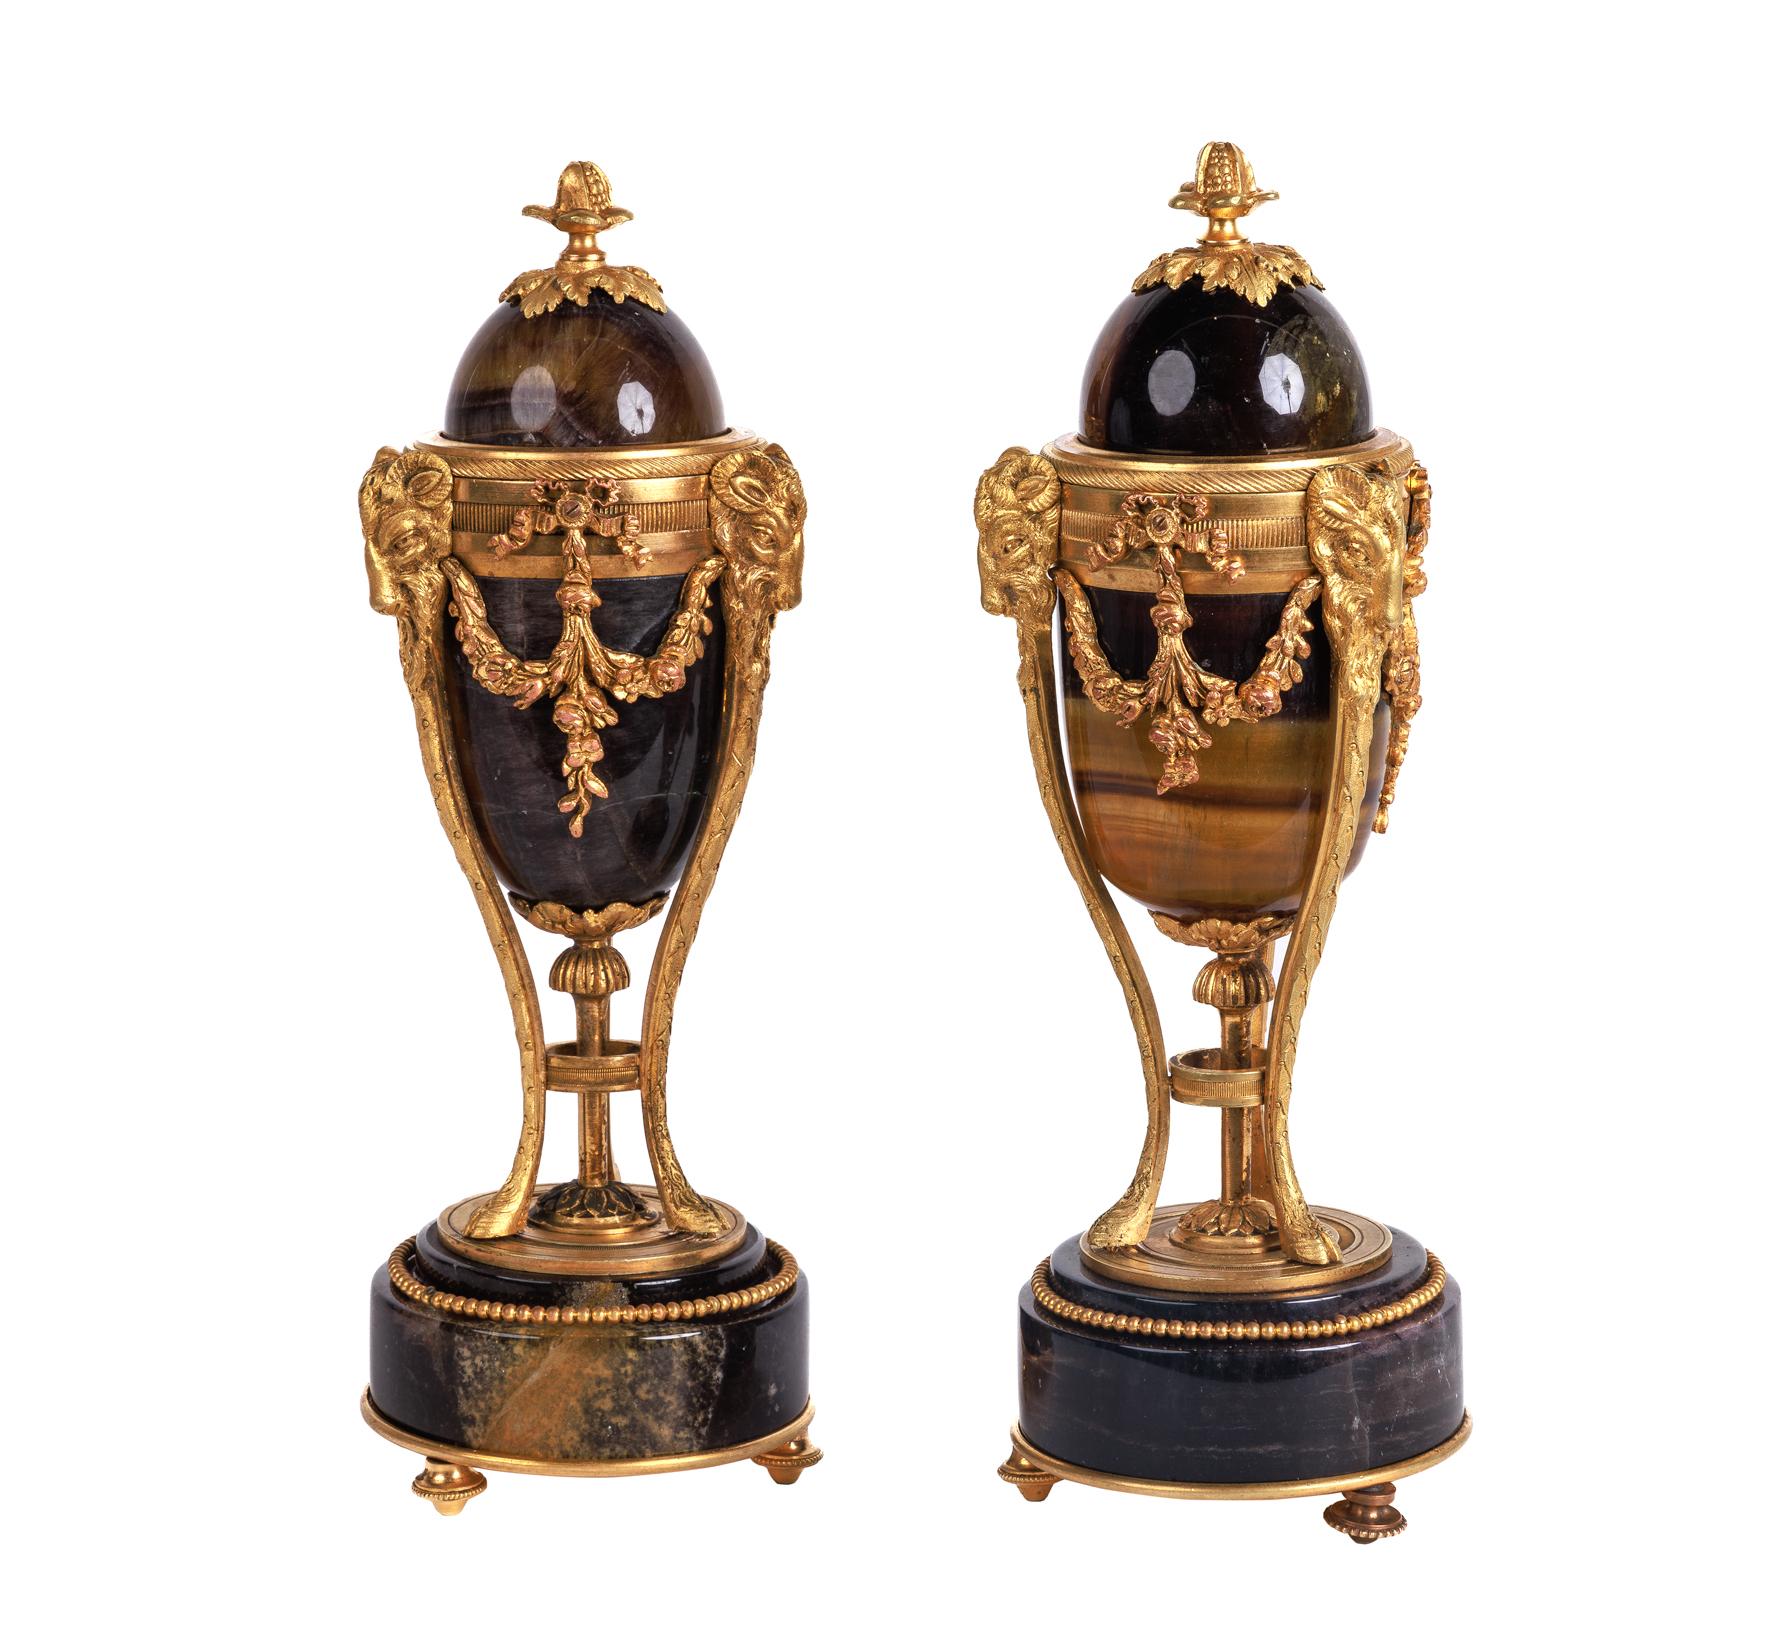 Ein seltenes Paar französischer Vasen / Leuchter mit Ormolu-Montierung, um 1870, im Stil von Matthew Boulton.

Diese seltenen und äußerst eleganten Garniturvasen und -deckel lassen sich durch einfaches Abnehmen und Umdrehen in Kerzenständer